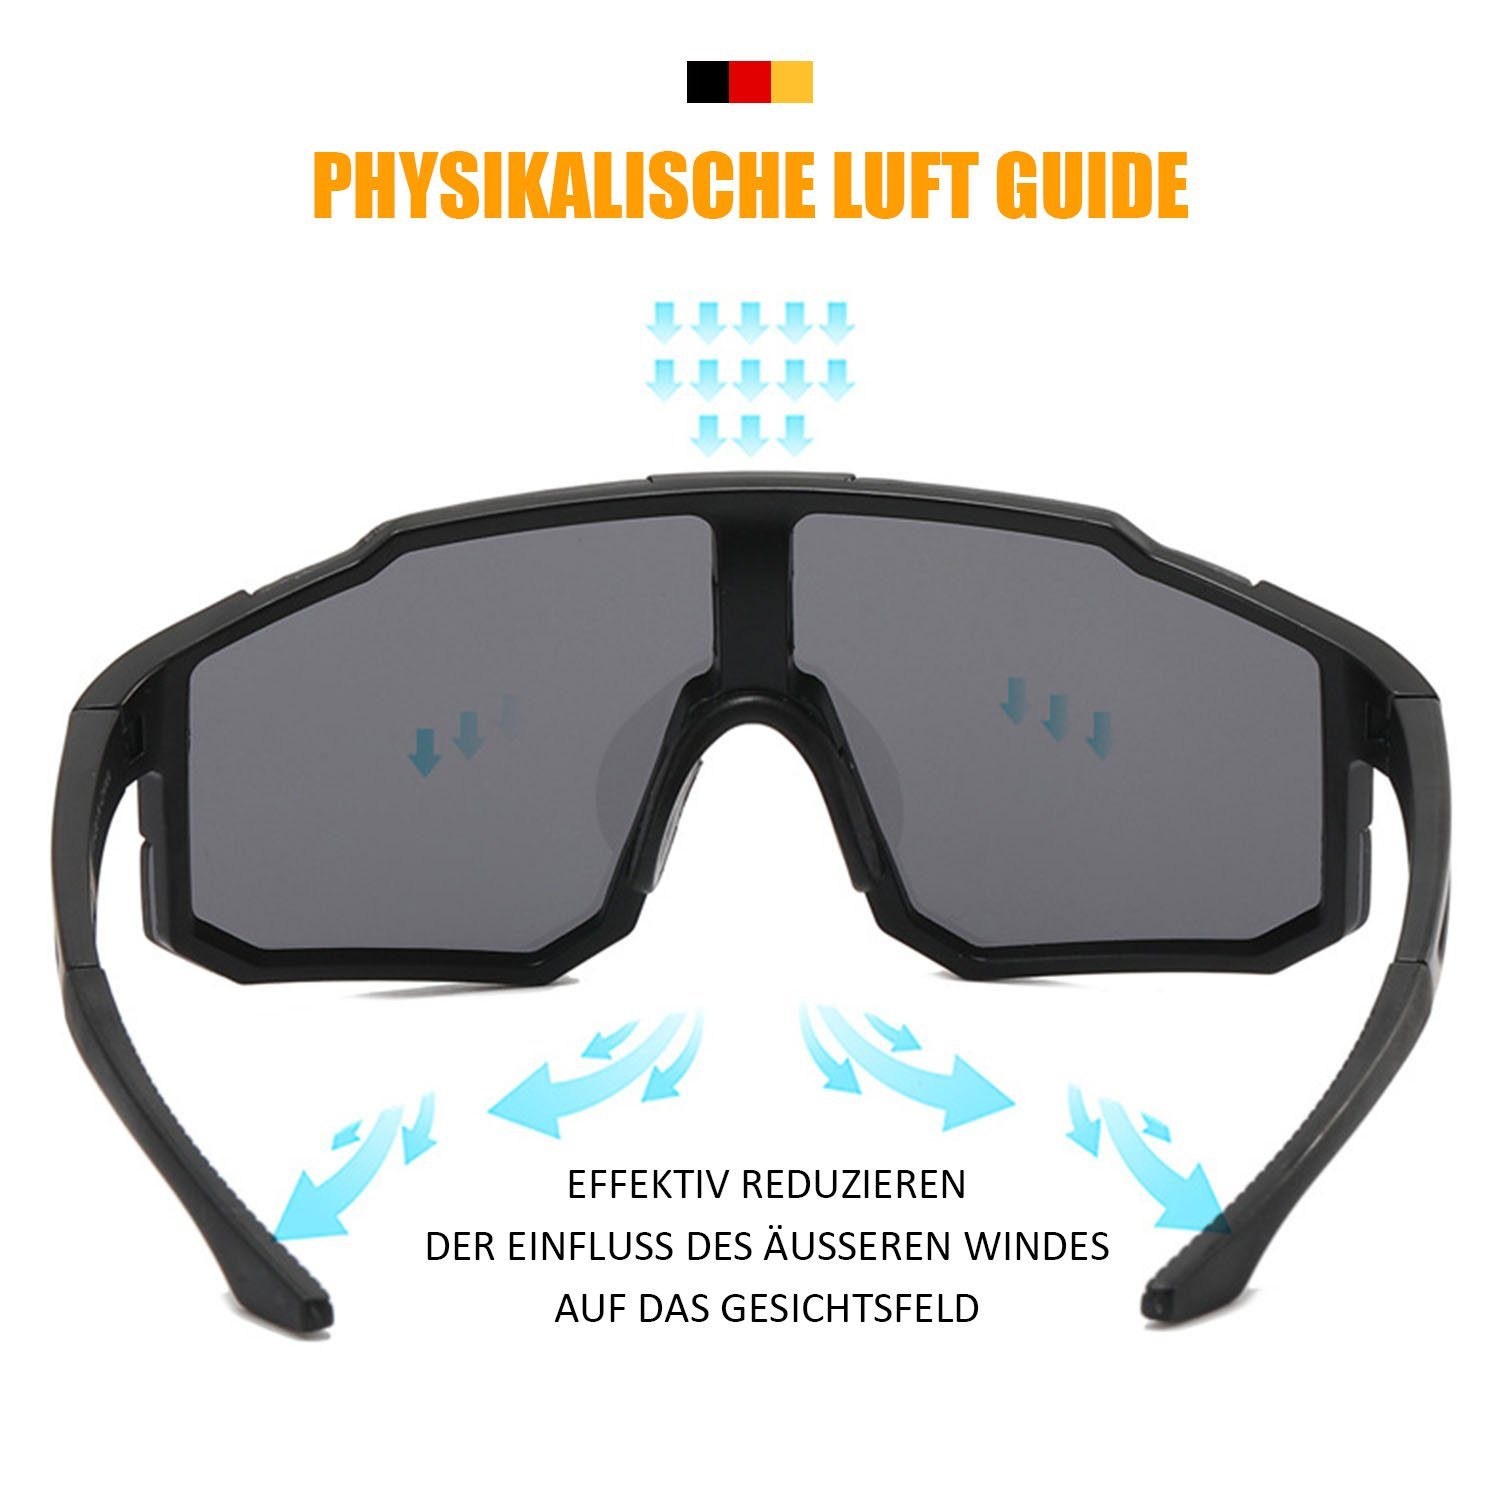 Herren Sicht und Windschutzscheibe, Sport-Sonnenbrillen, Fahrradbrille Weiße gelbe Box für Fahrradbrillen und MAGICSHE UV-beständige Brille klare Folie Damen,